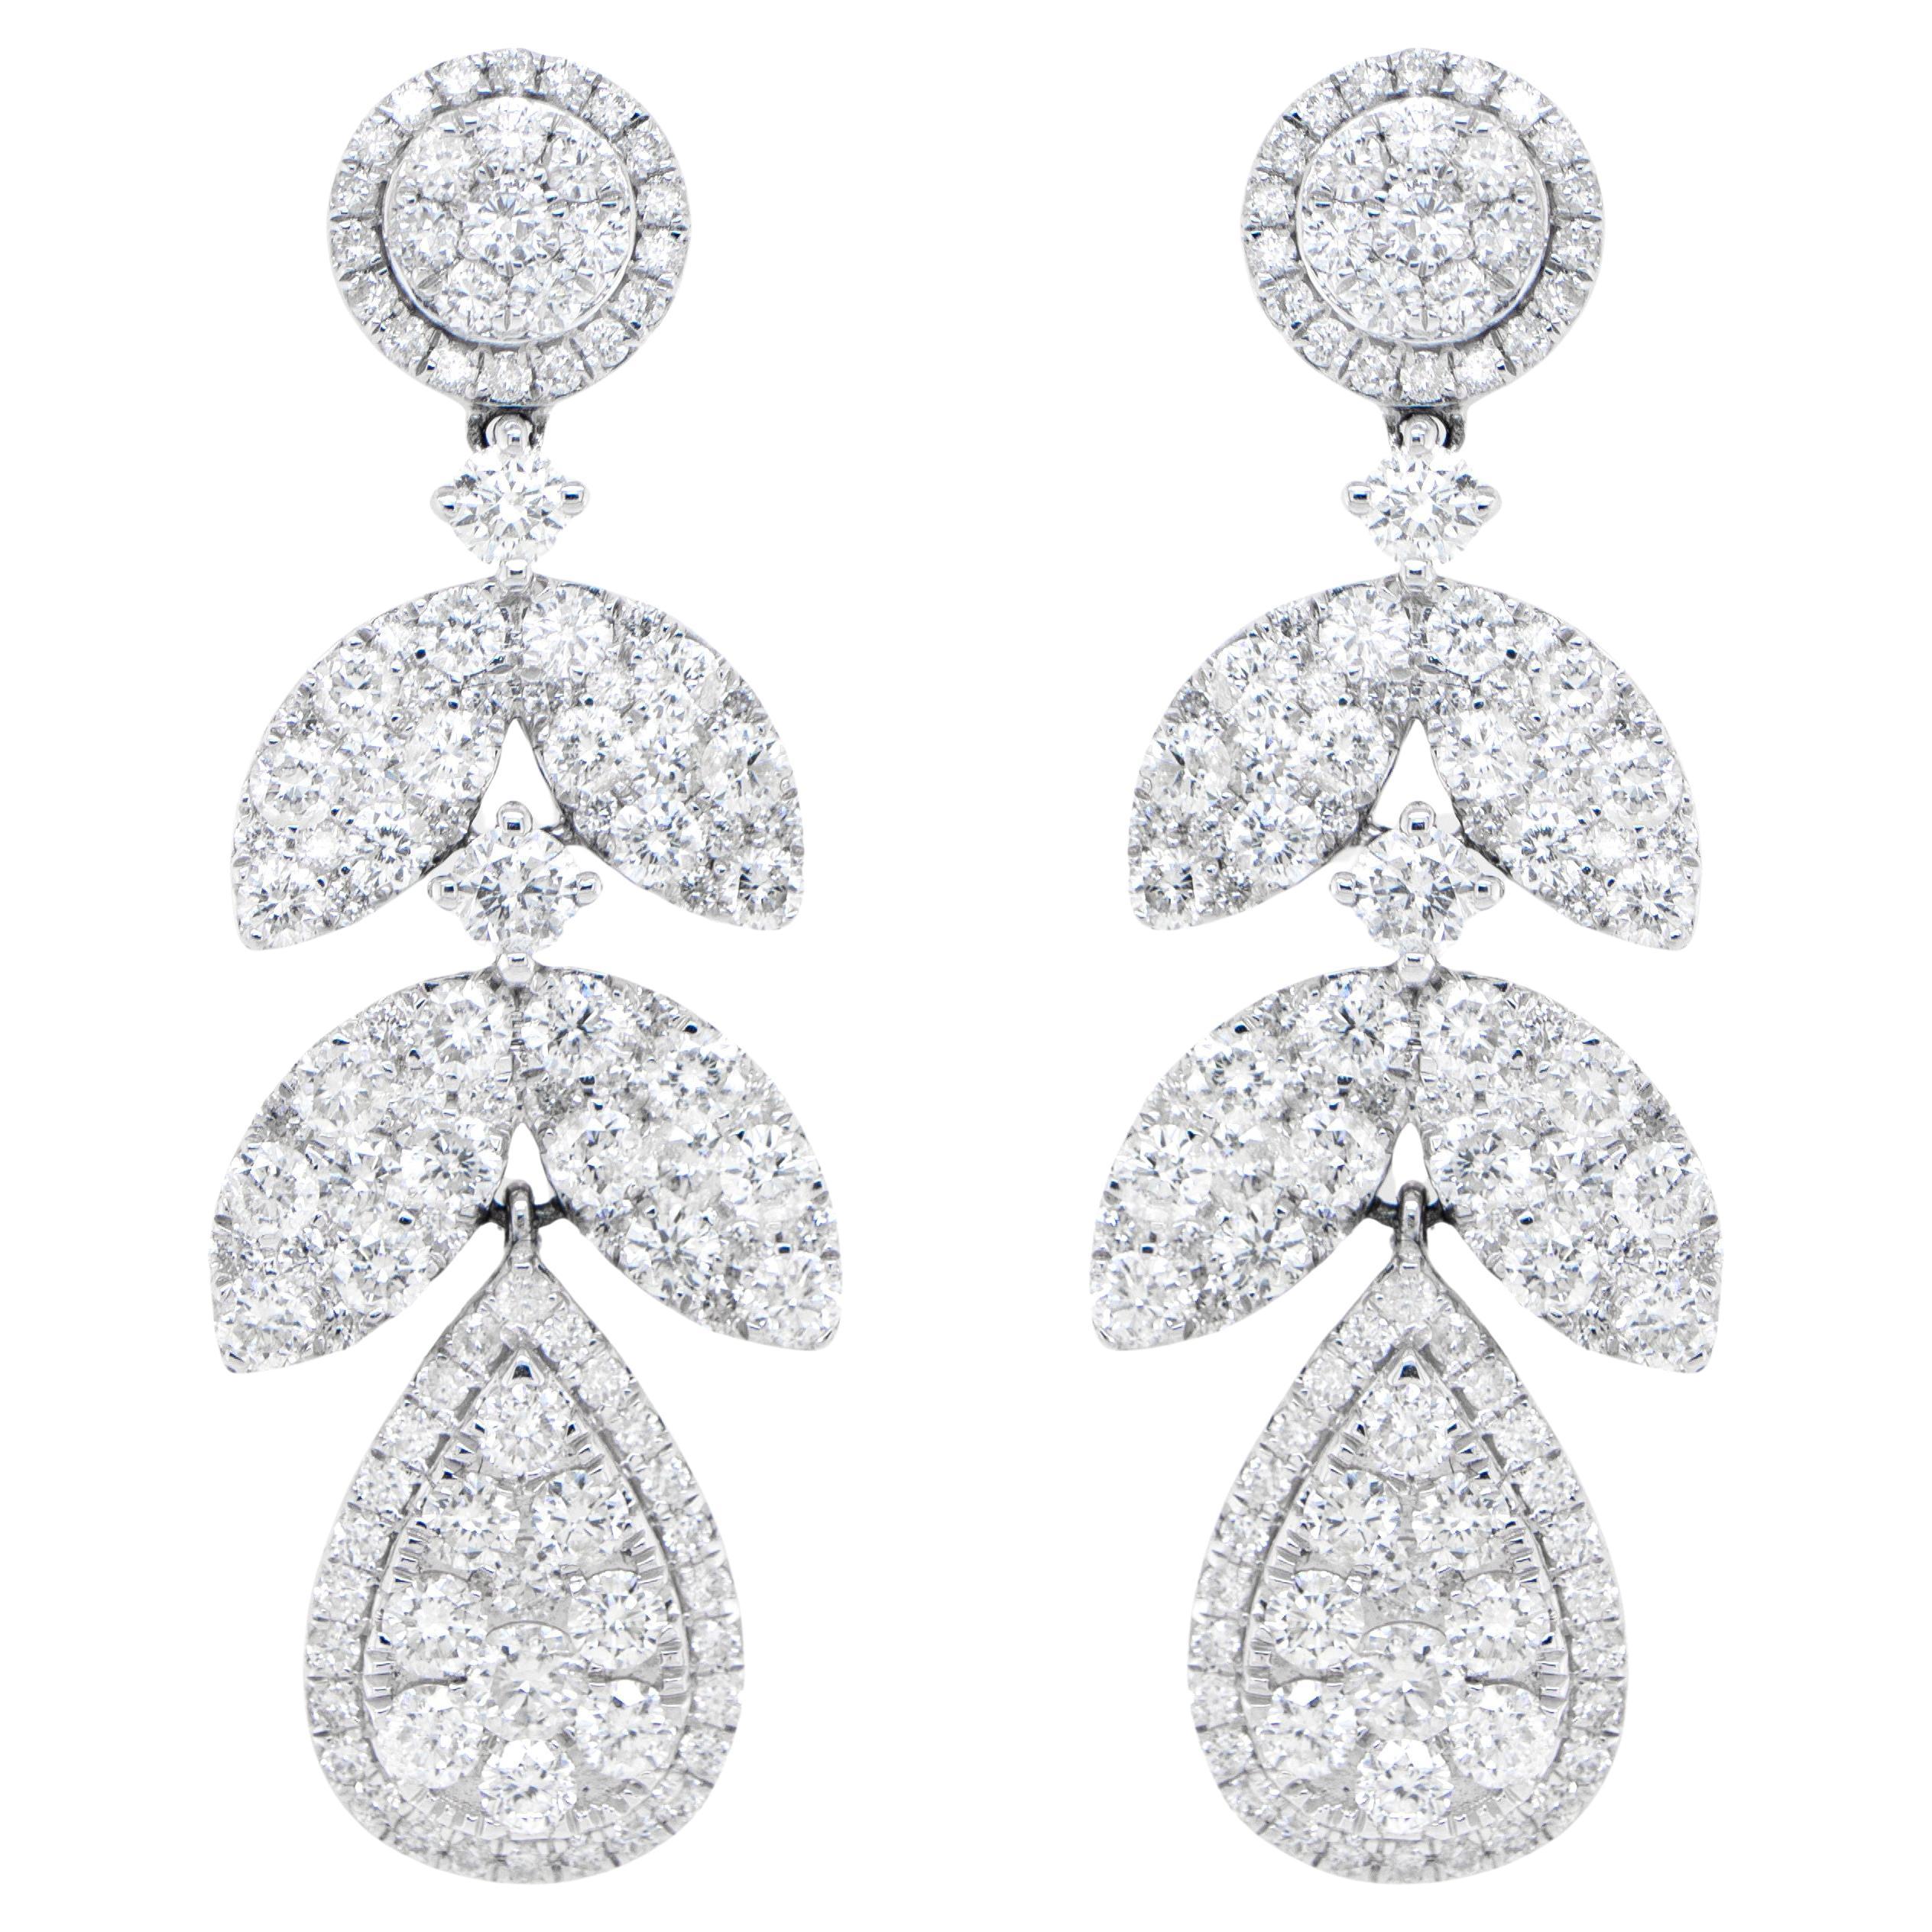 Diamond Chandelier Earrings 3.77 Carats 18K White Gold